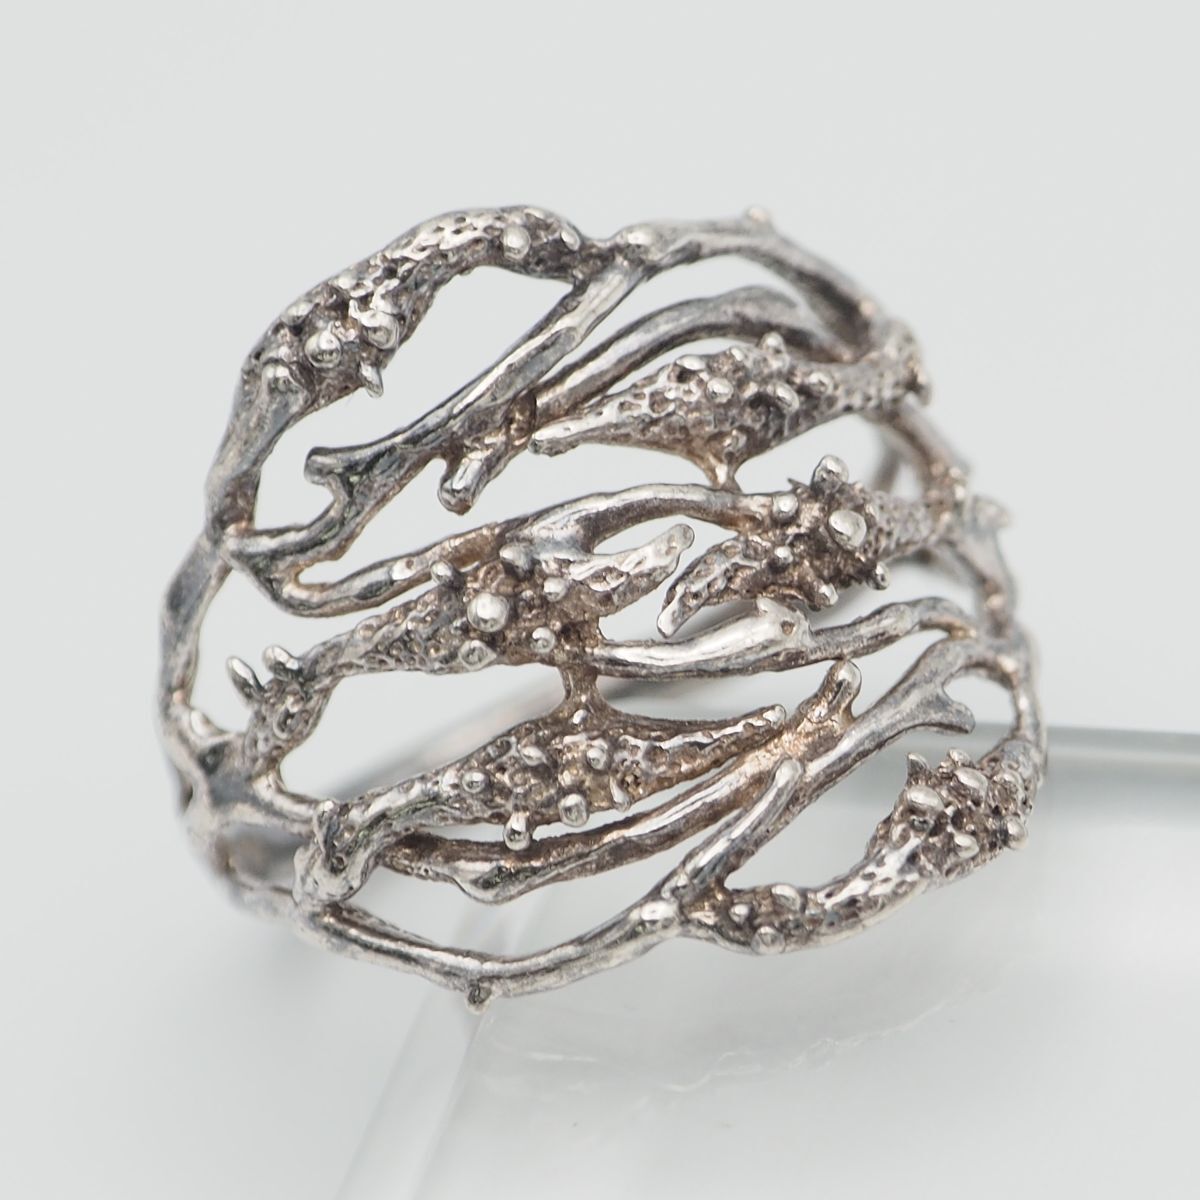 K310 Vintage SILVER печать кольцо дизайн серебряный кольцо 13~14 номер 